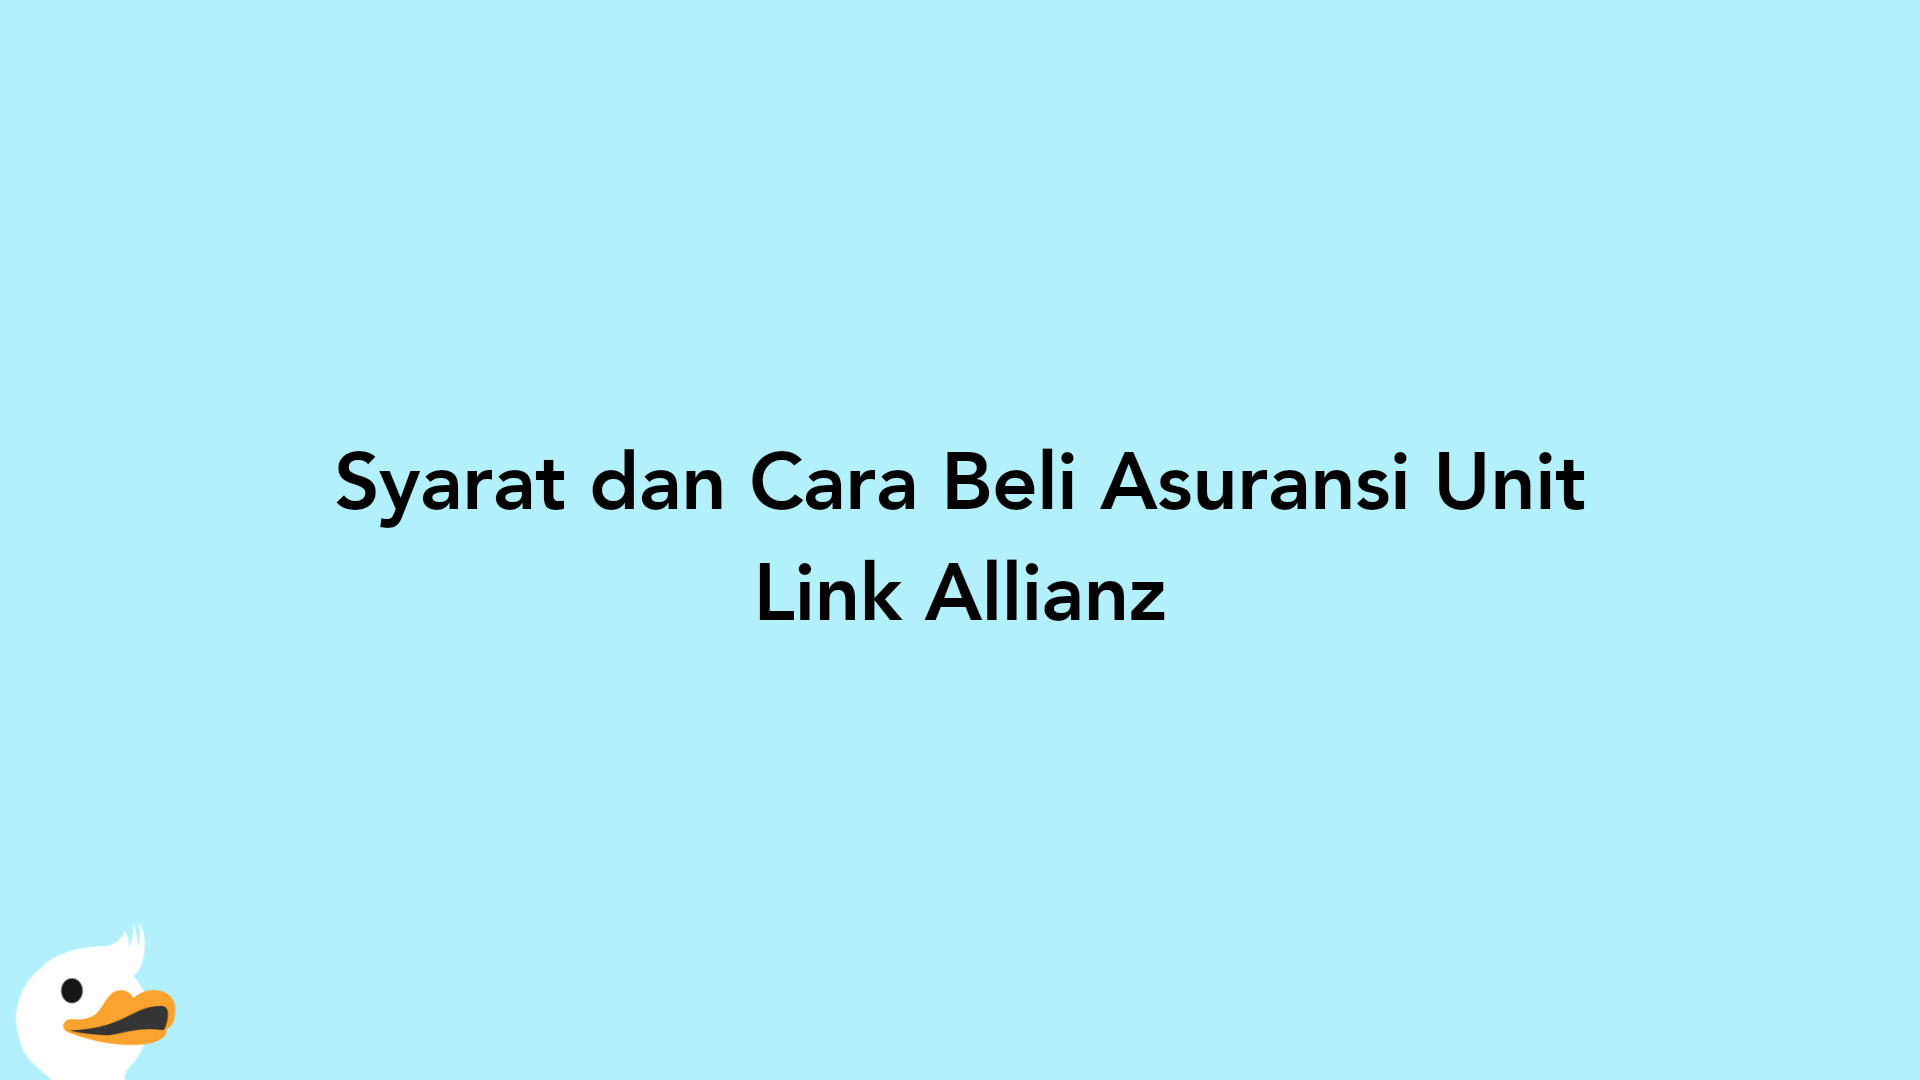 Syarat dan Cara Beli Asuransi Unit Link Allianz